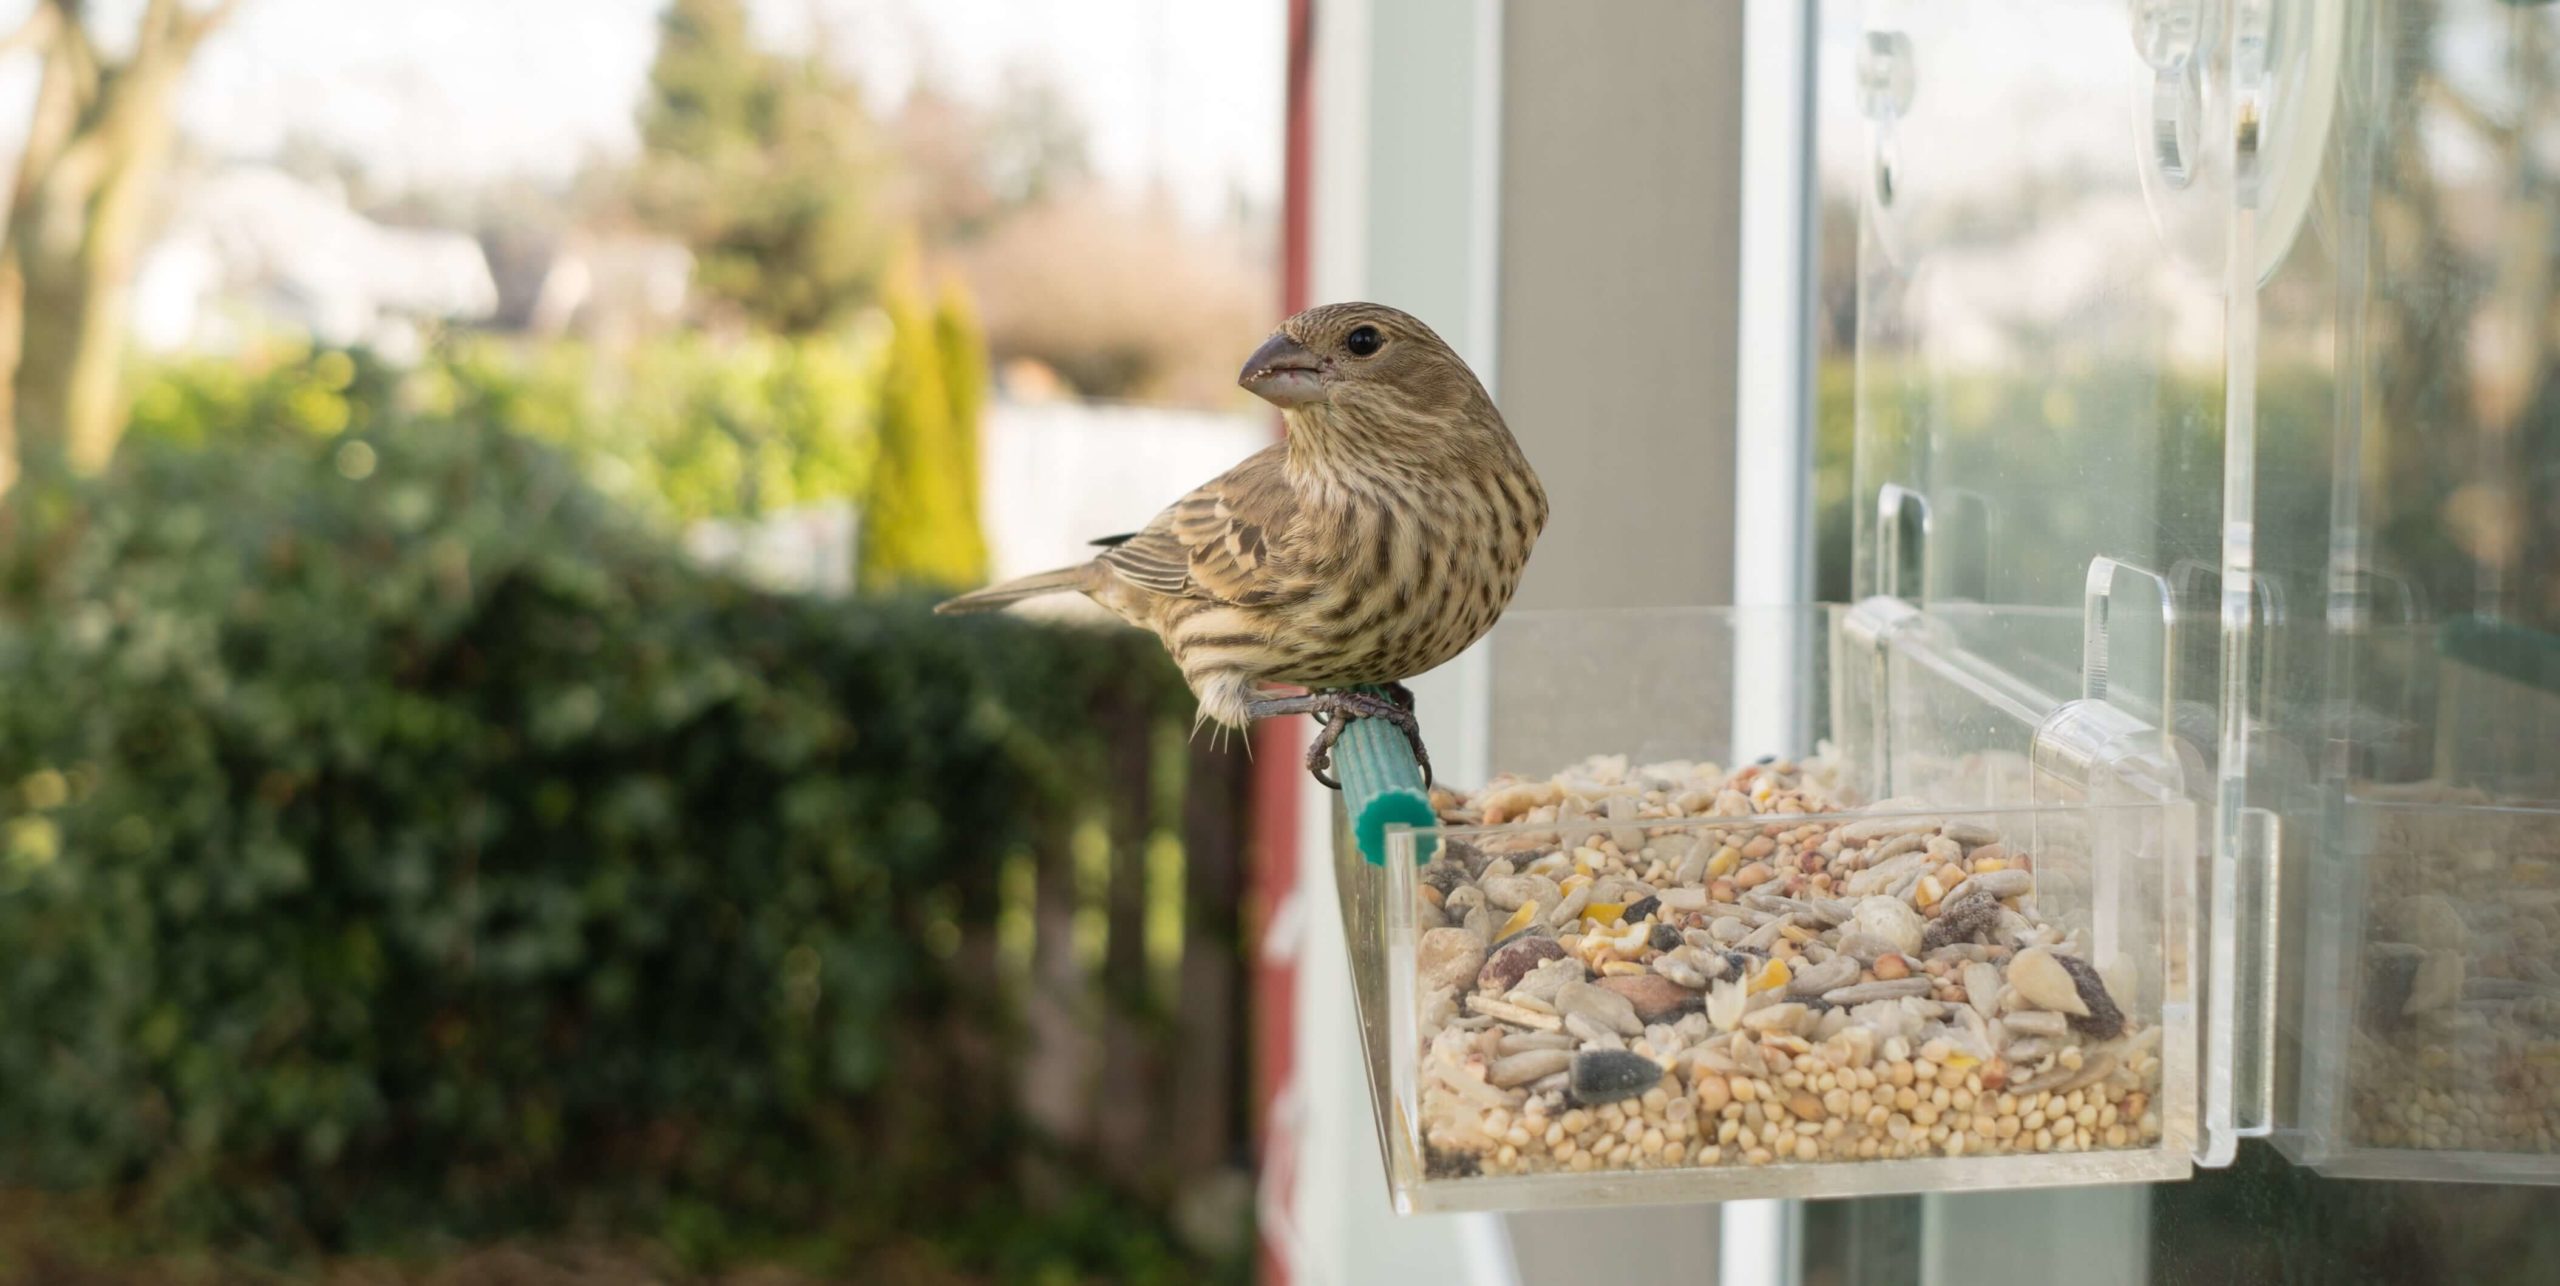 Window bird feeder